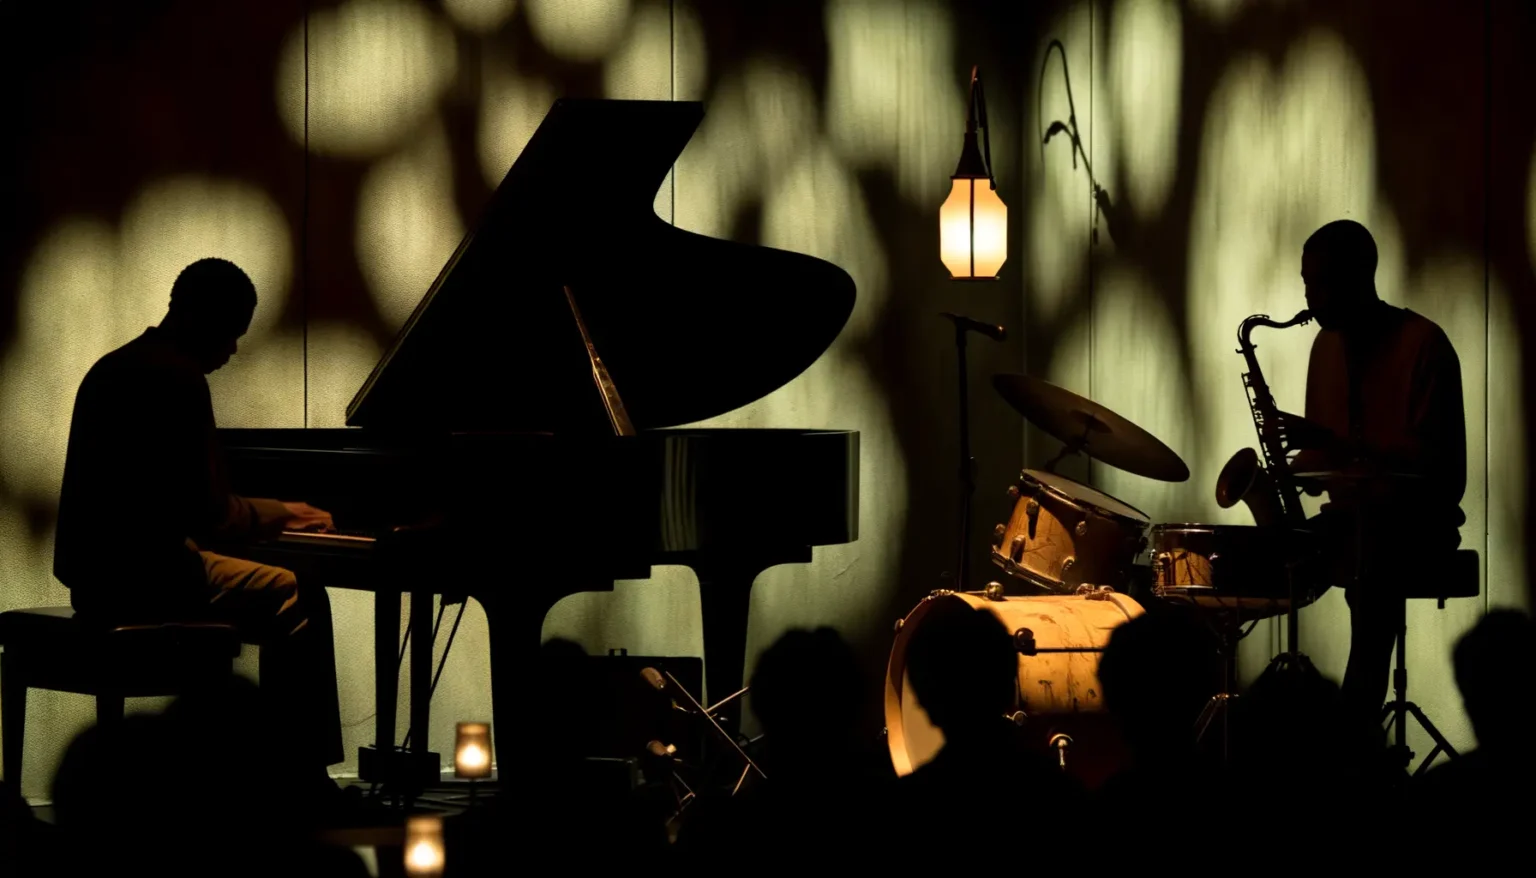 Eine atmosphärische Szene mit zwei Musikern in Silhouette, die Jazz spielen: Ein Pianist an einem Flügel und ein Saxophonist, die beide vor einem hinterleuchteten Hintergrund stehen, der ihre Schatten an die Wand wirft, mit einer stimmungsvollen Beleuchtung durch eine Hängelampe und Kerzen.